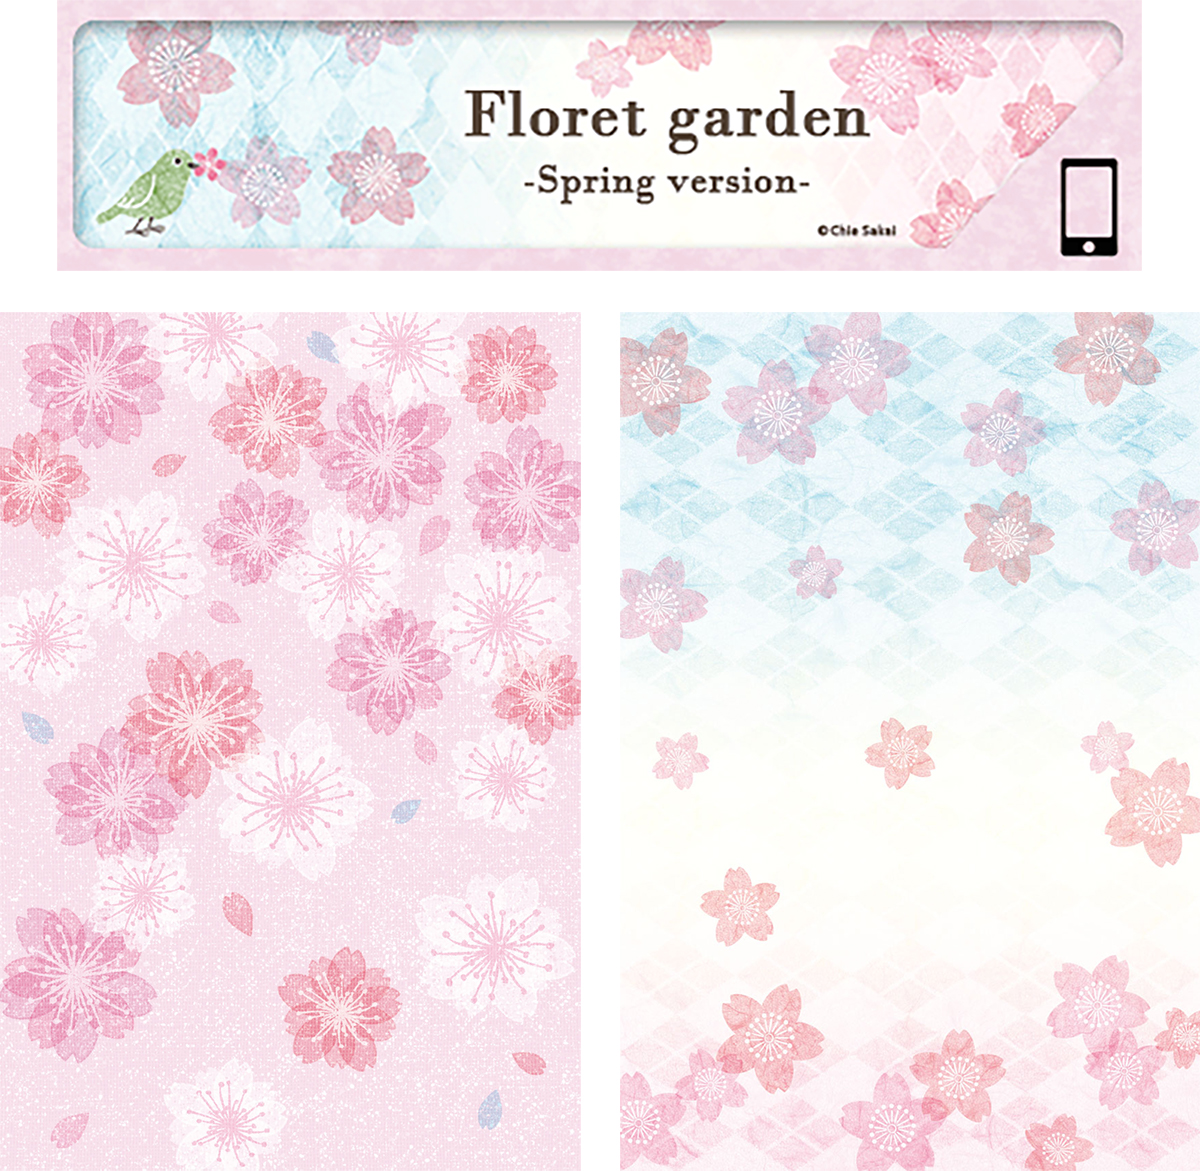 きせかえサイト Playtoys きせかえコンテンツ用イラストレーション『Floret garden -Spring version-』